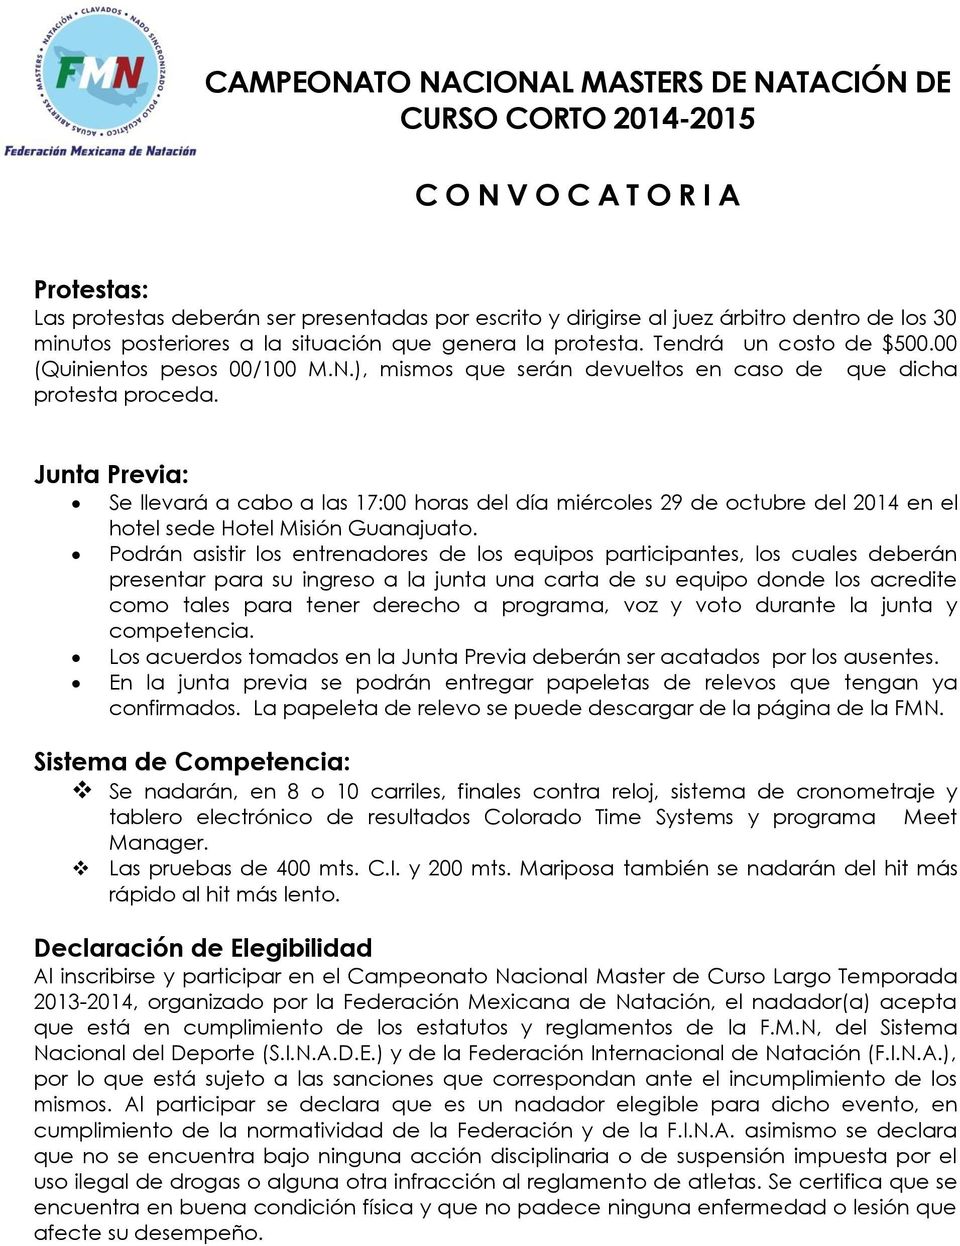 Junta Previa: Se llevará a cabo a las 17:00 horas del día miércoles 29 de octubre del 2014 en el hotel sede Hotel Misión Guanajuato.